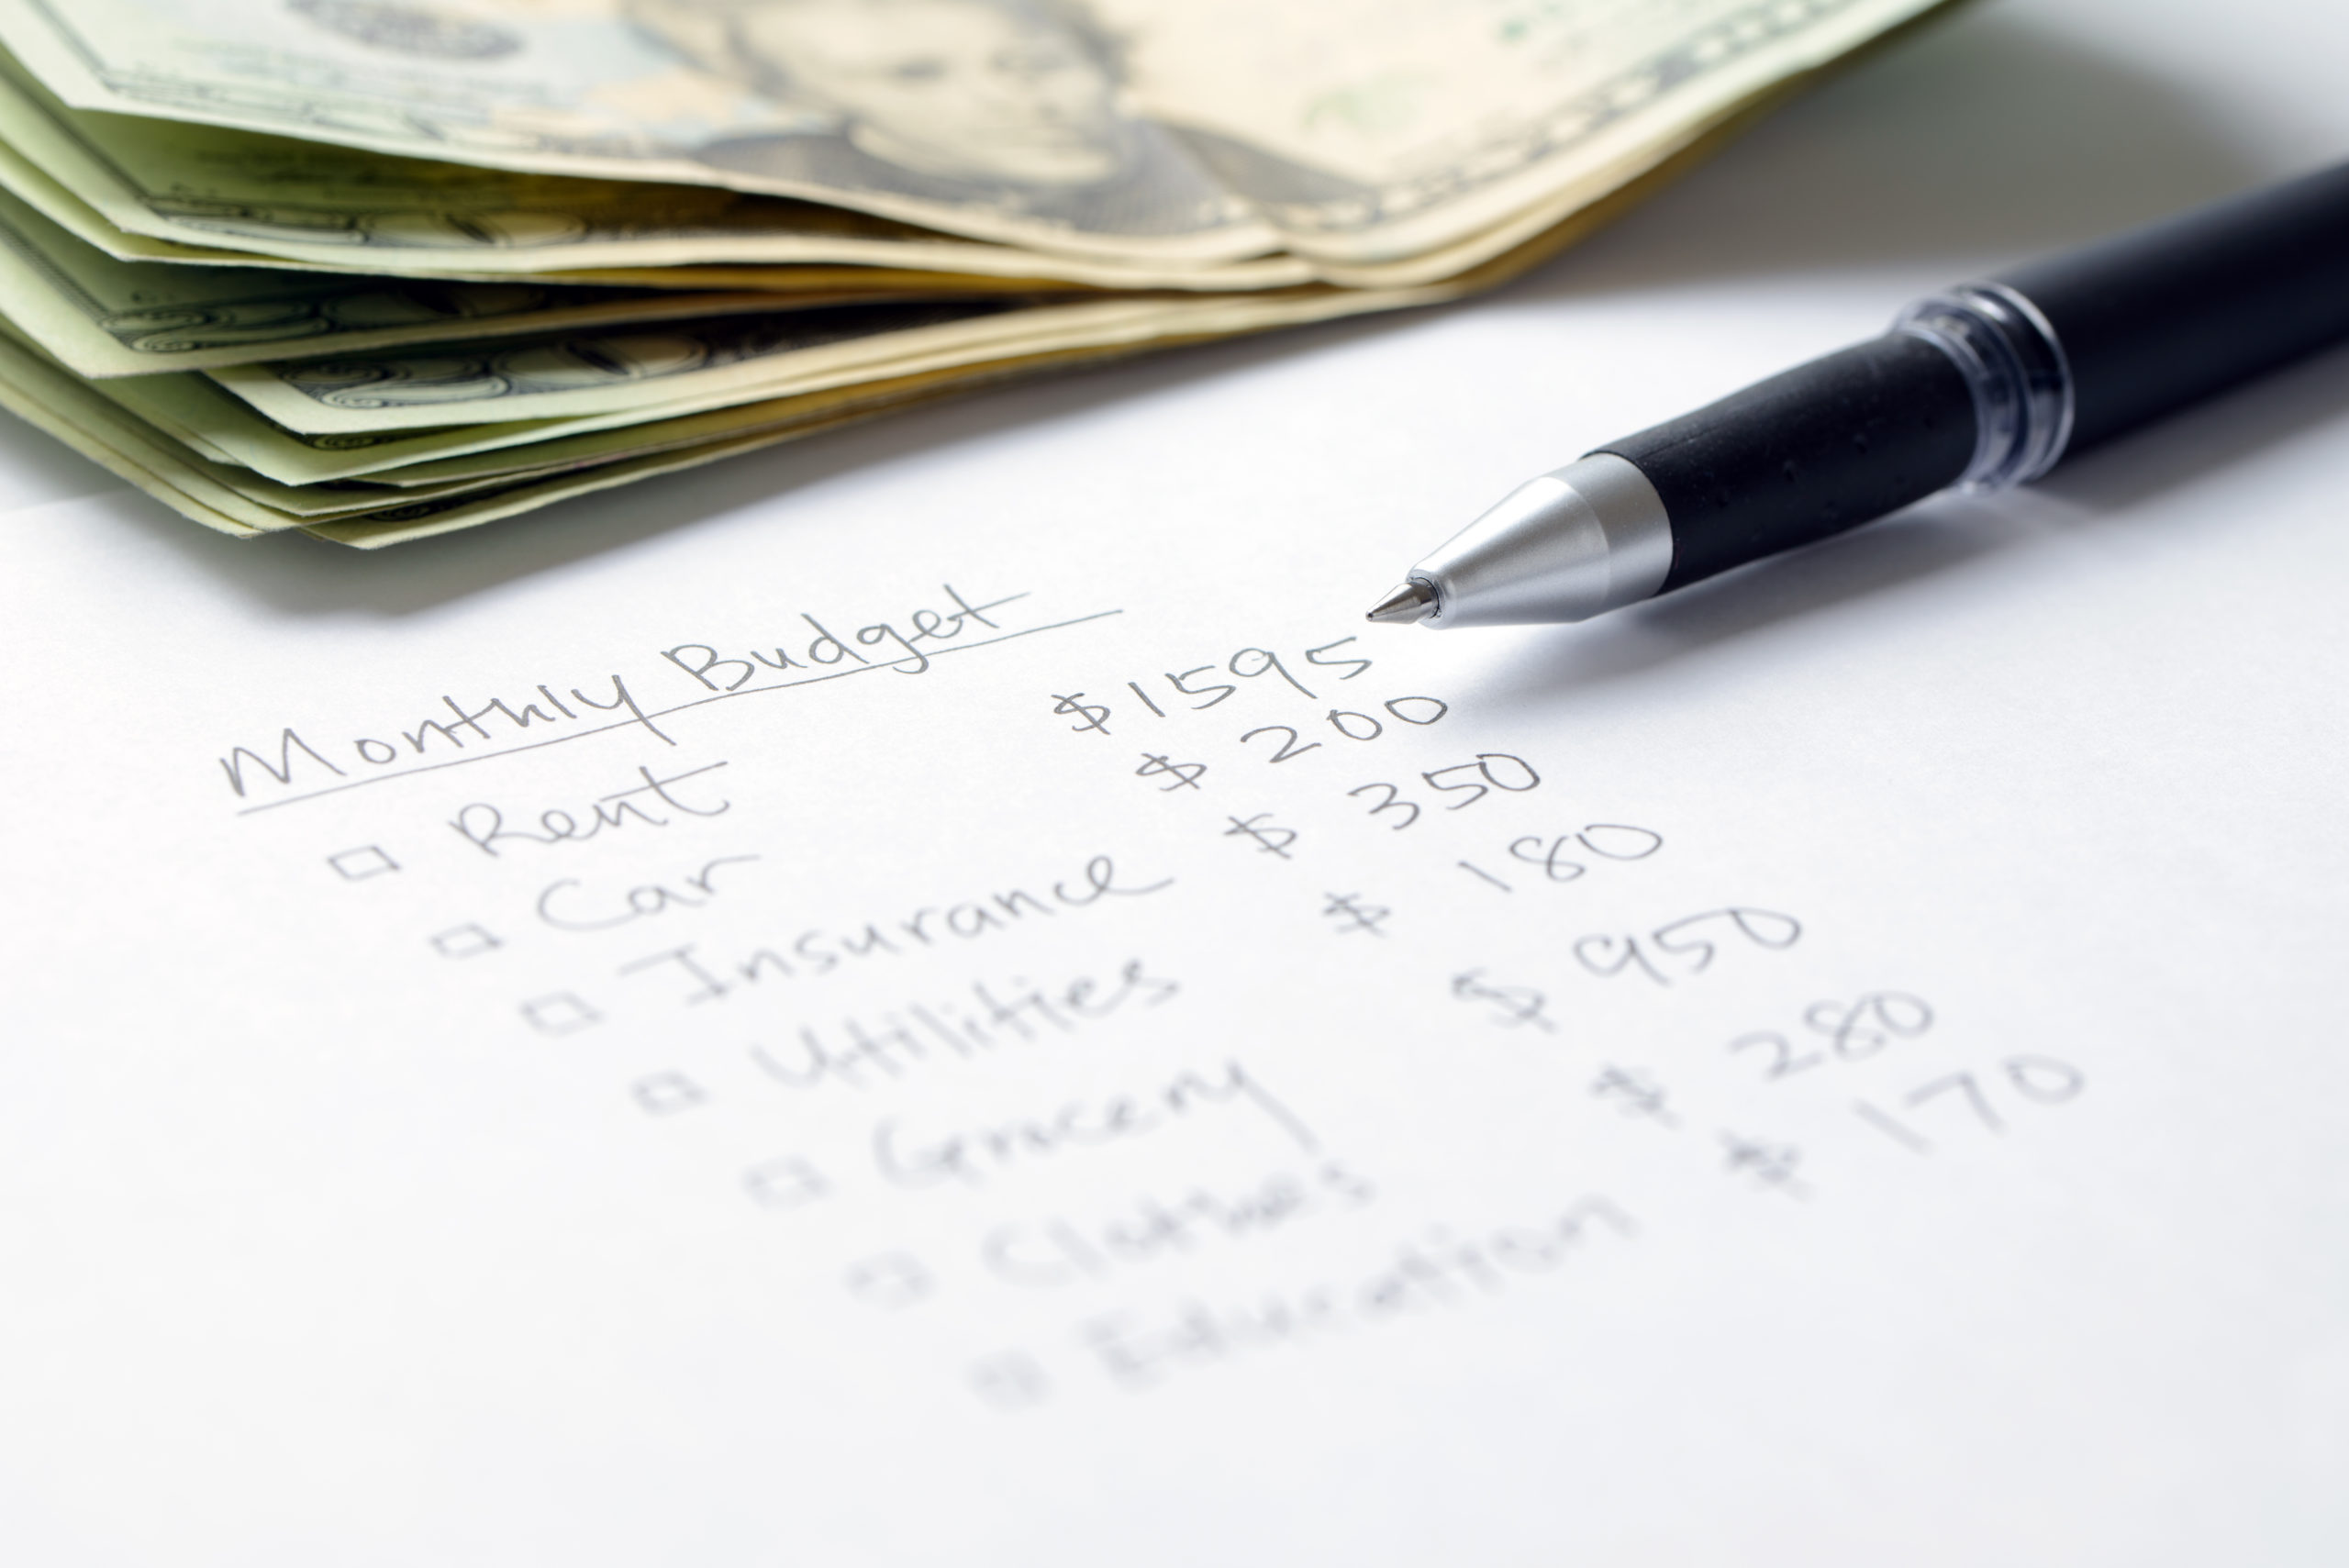 Monthly budget checklist